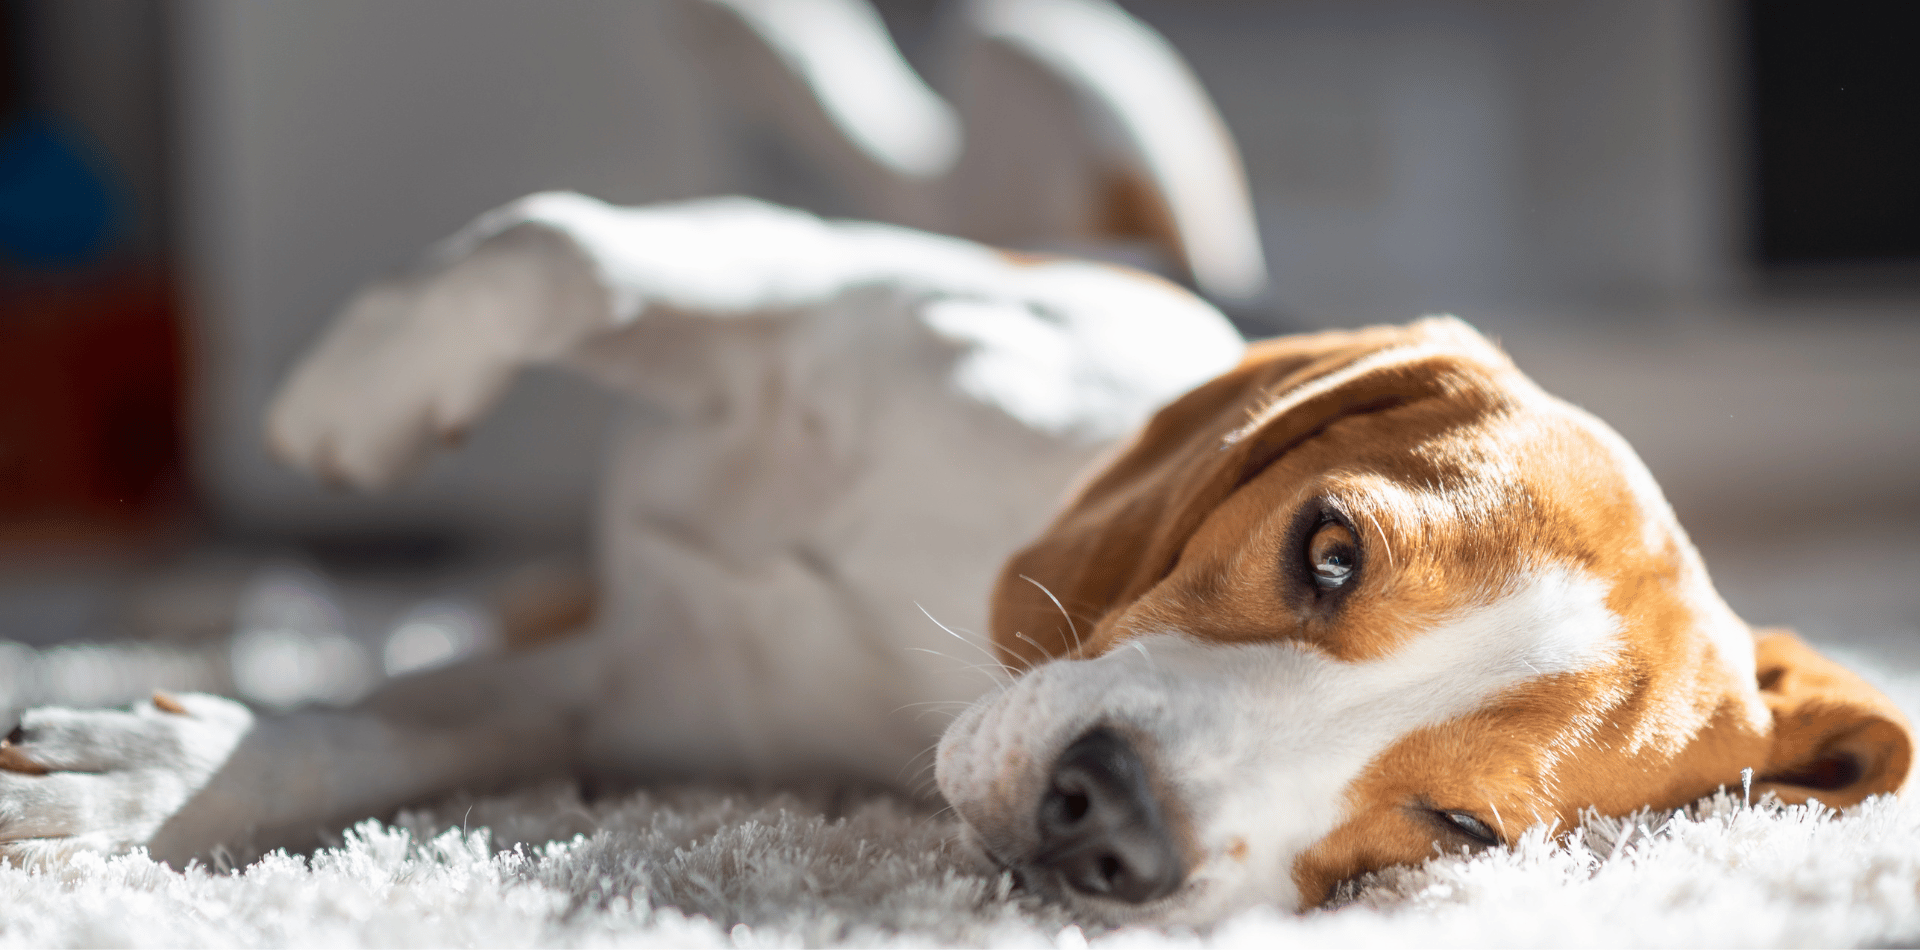 La torsion ou dilatation de l'estomac chez le chien, comment prévenir et agir ?